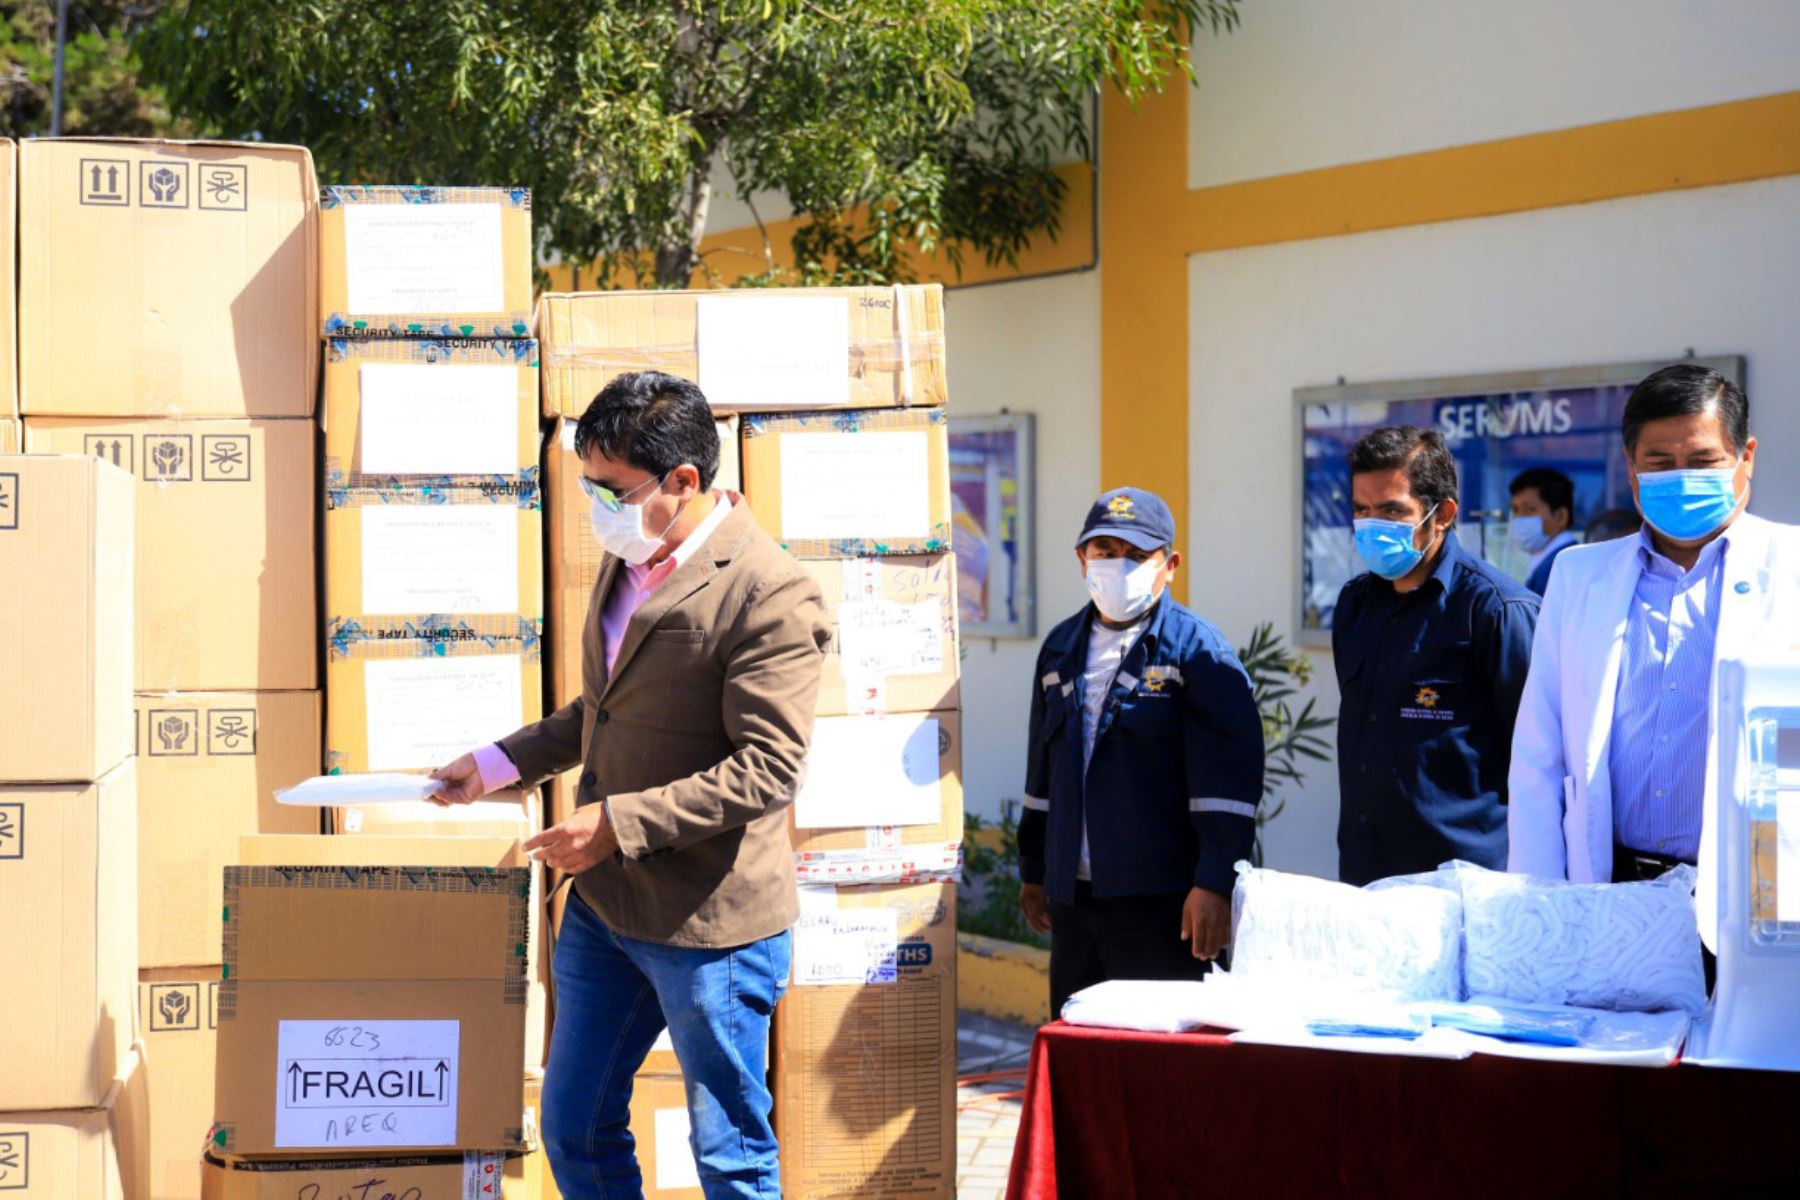 El gobernador regional de Arequipa, Elmer Cáceres, entregó 17,800 equipos de protección personal y cubos de poliestireno al hospital covid-19. Foto: ANDINA/Difusión